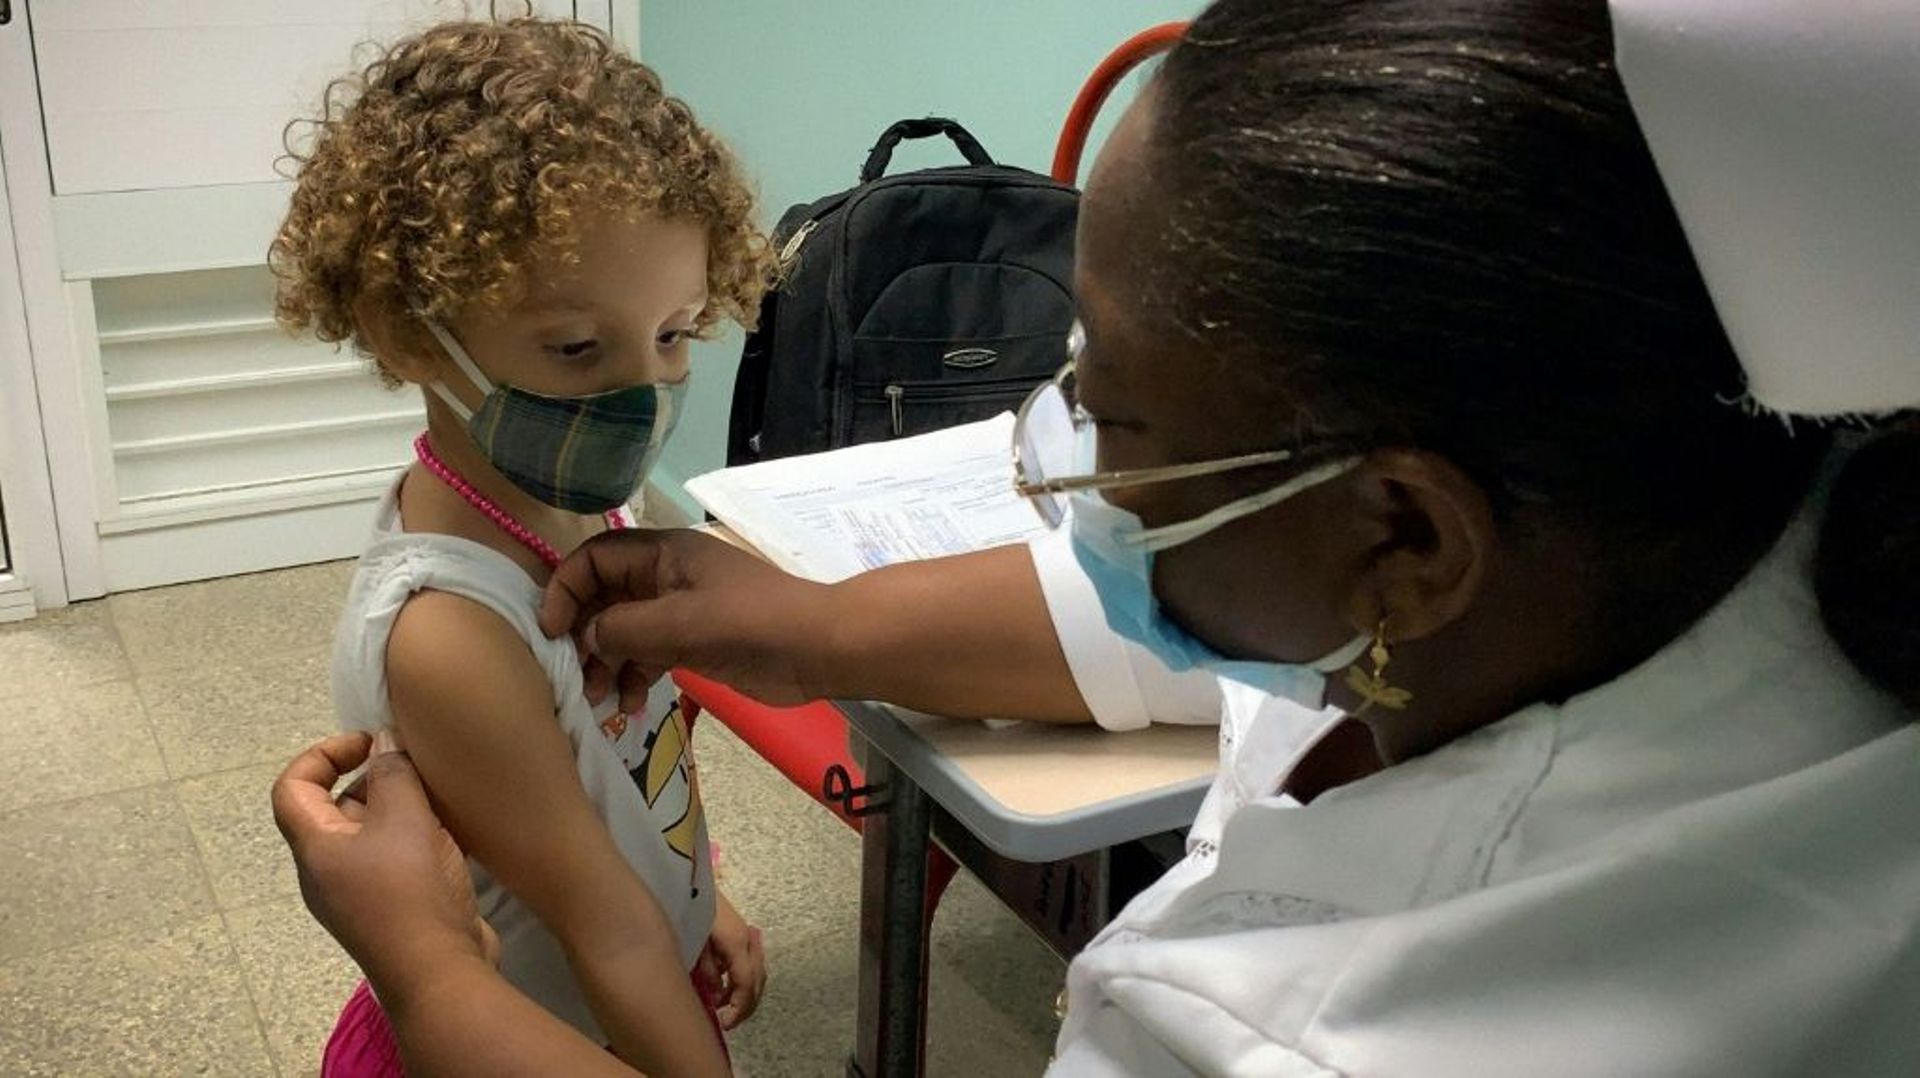 Une infirmière se prépare à vacciner une fillette de 3 ans contre le Covid-19 avec le vaccin cubain Soberana Plus dans le cadre d'un essai clinique, le 24 août 2021 à La Havane  